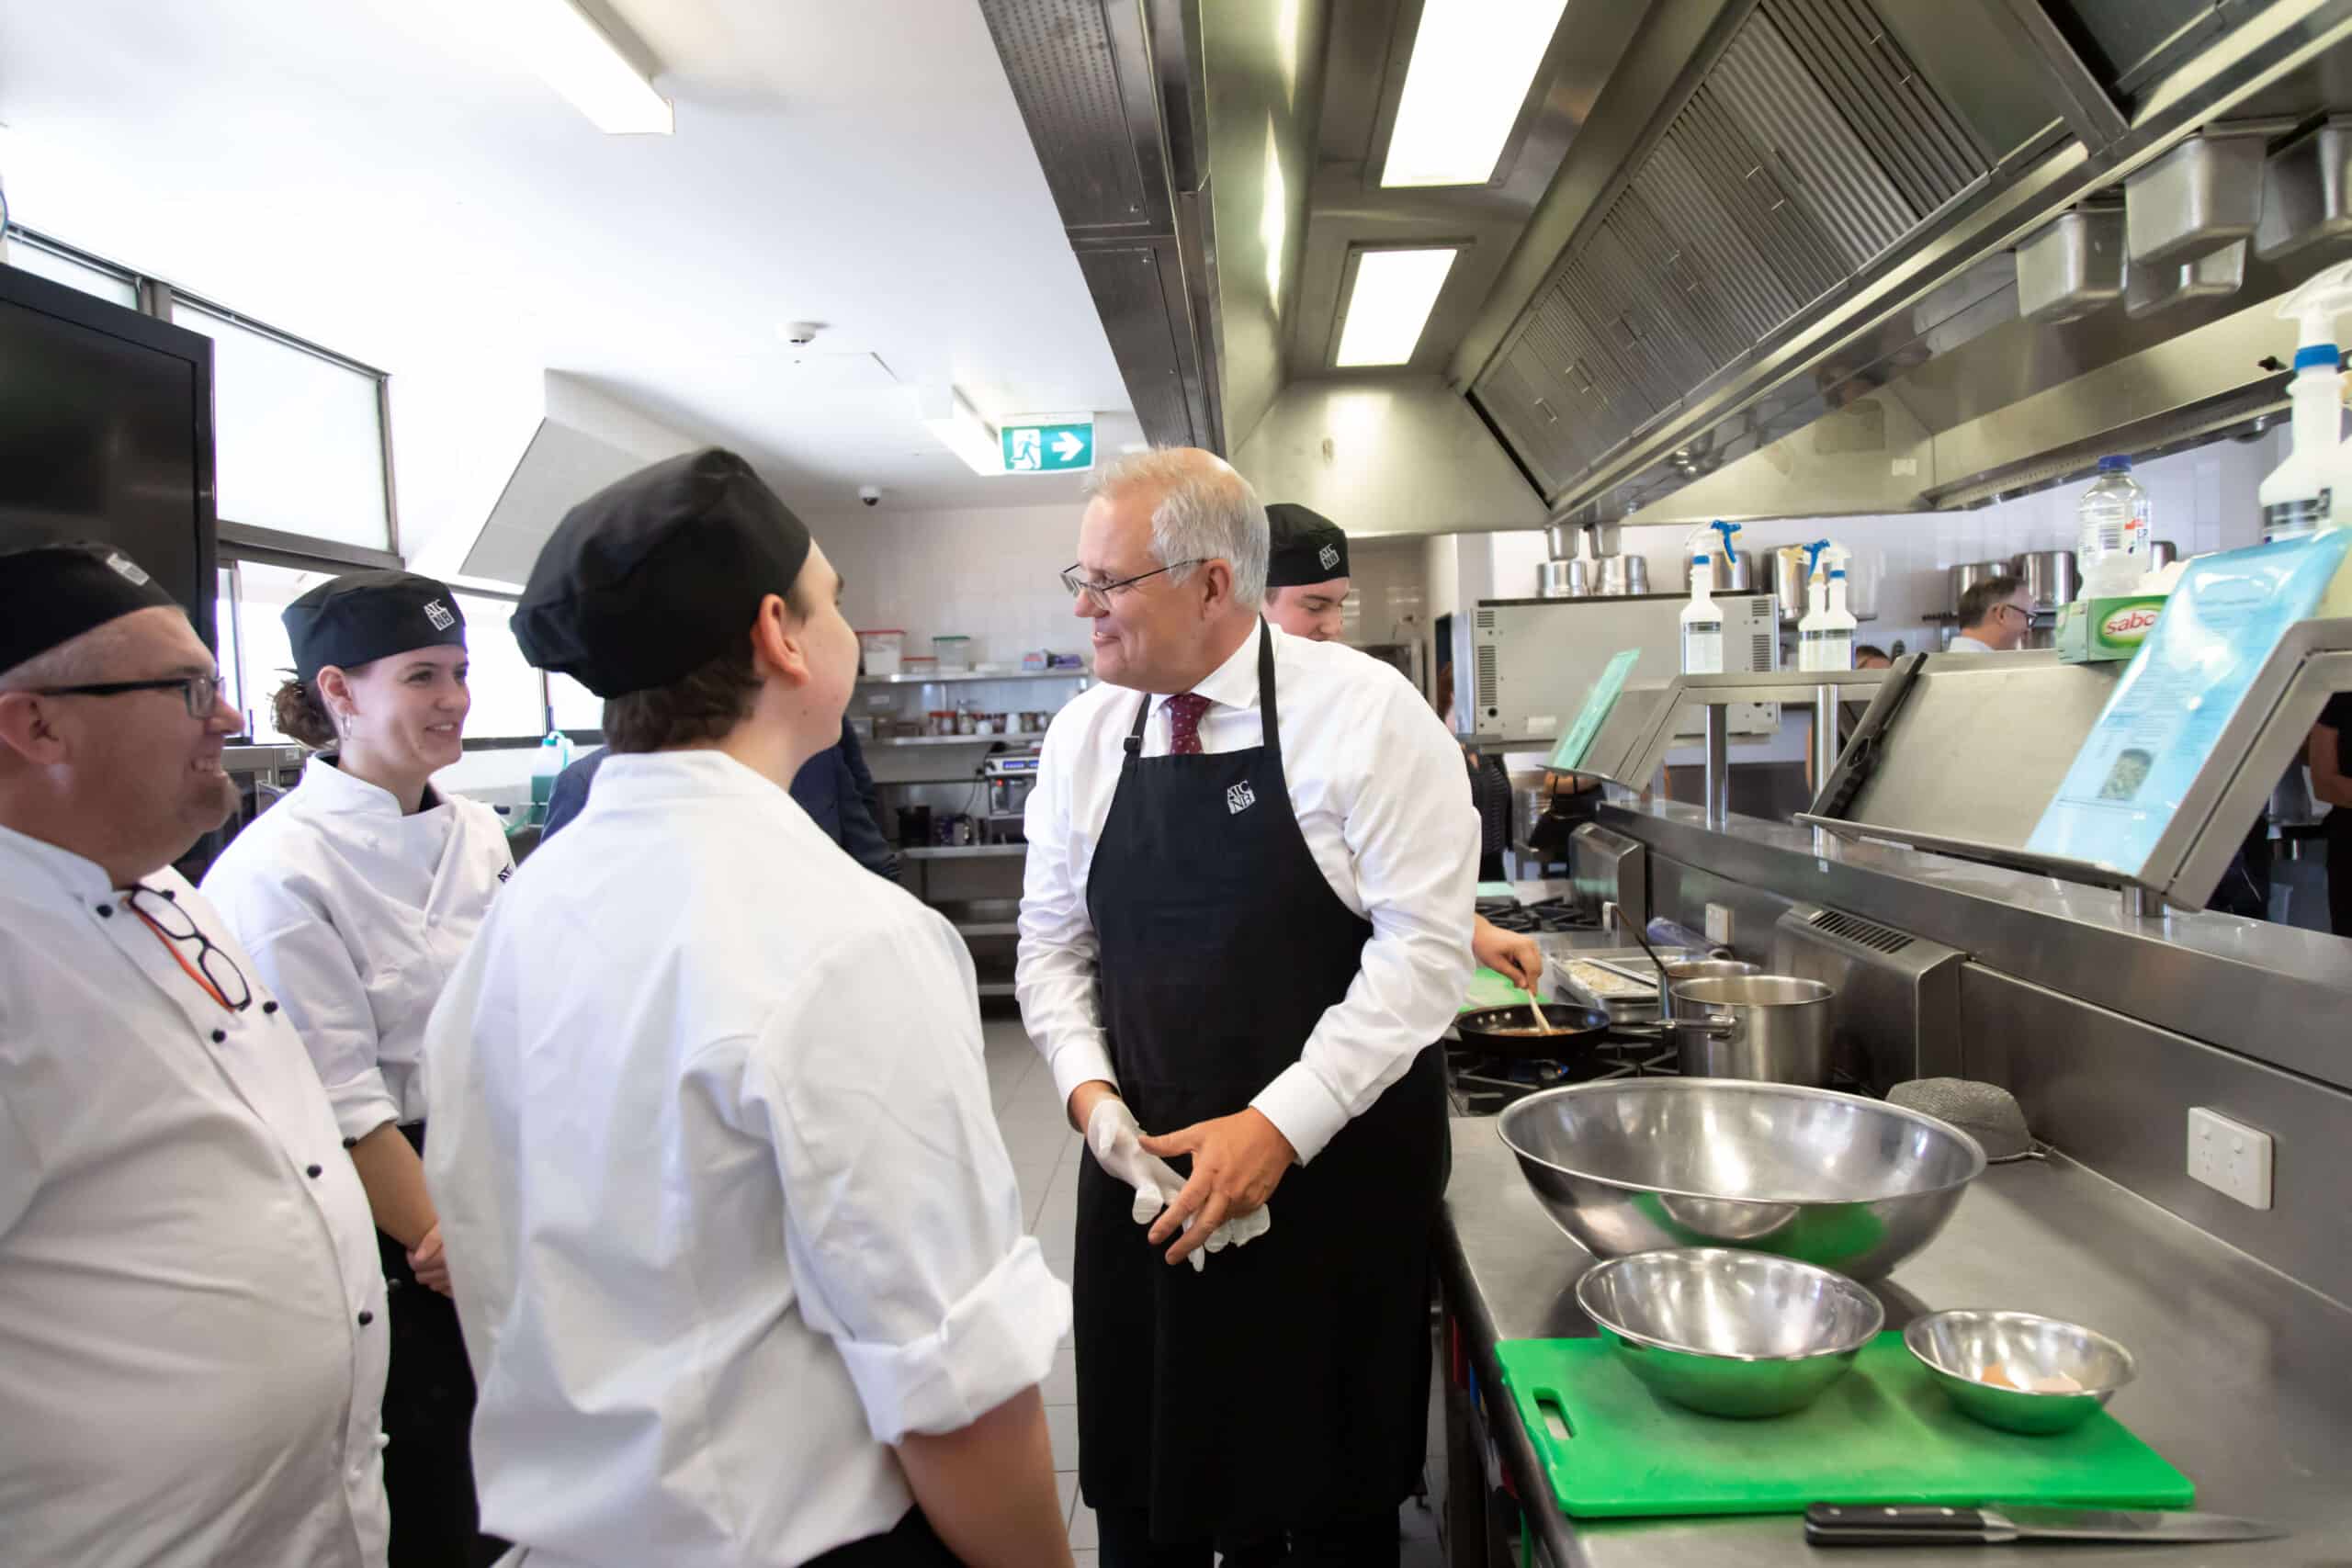 Prime Minister Scott Morrison visited the Australian Trade College